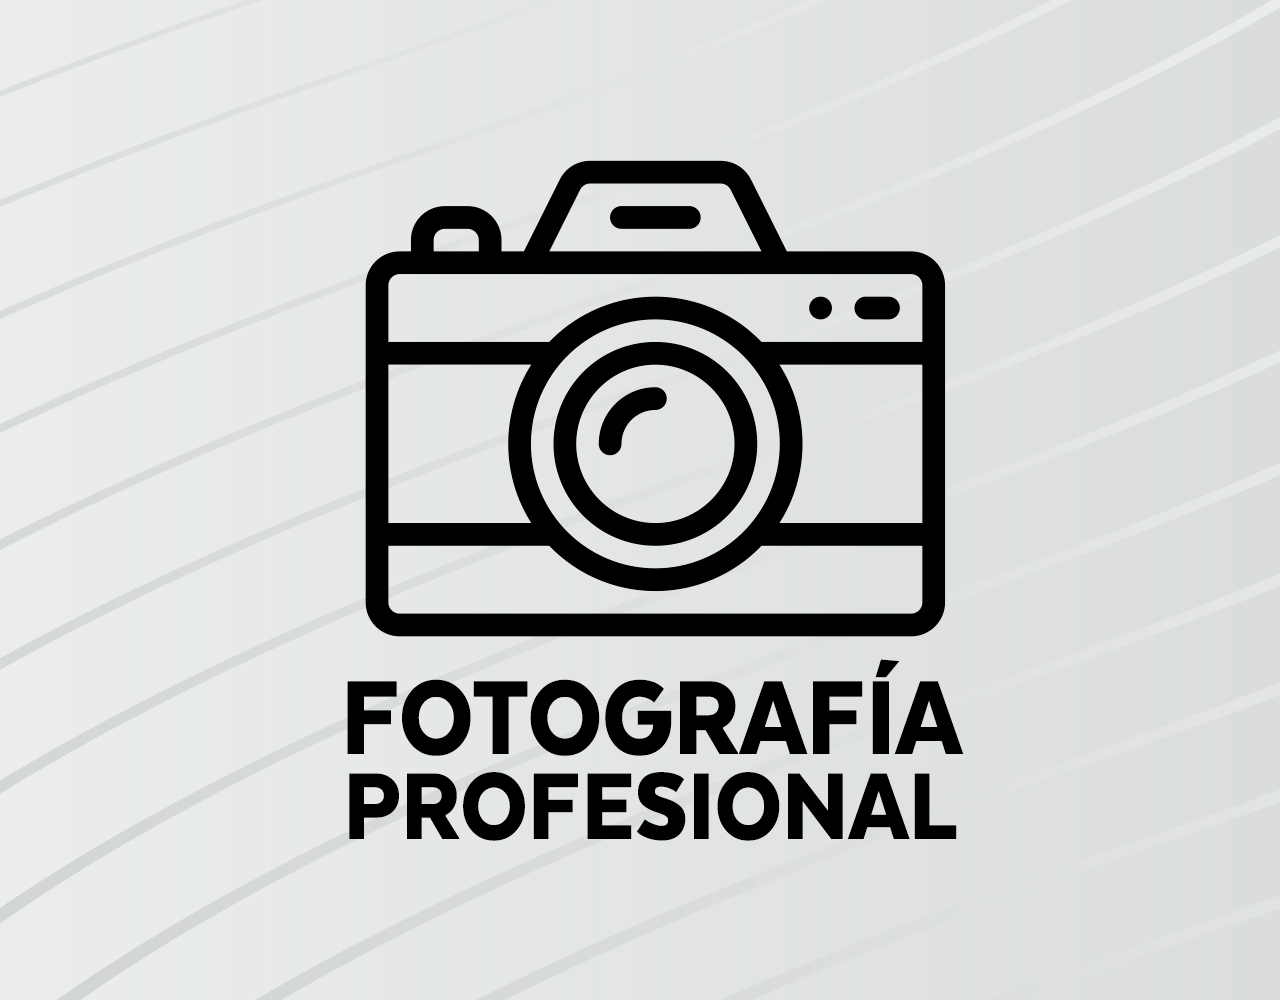 servicio fotografia profesional en pereira